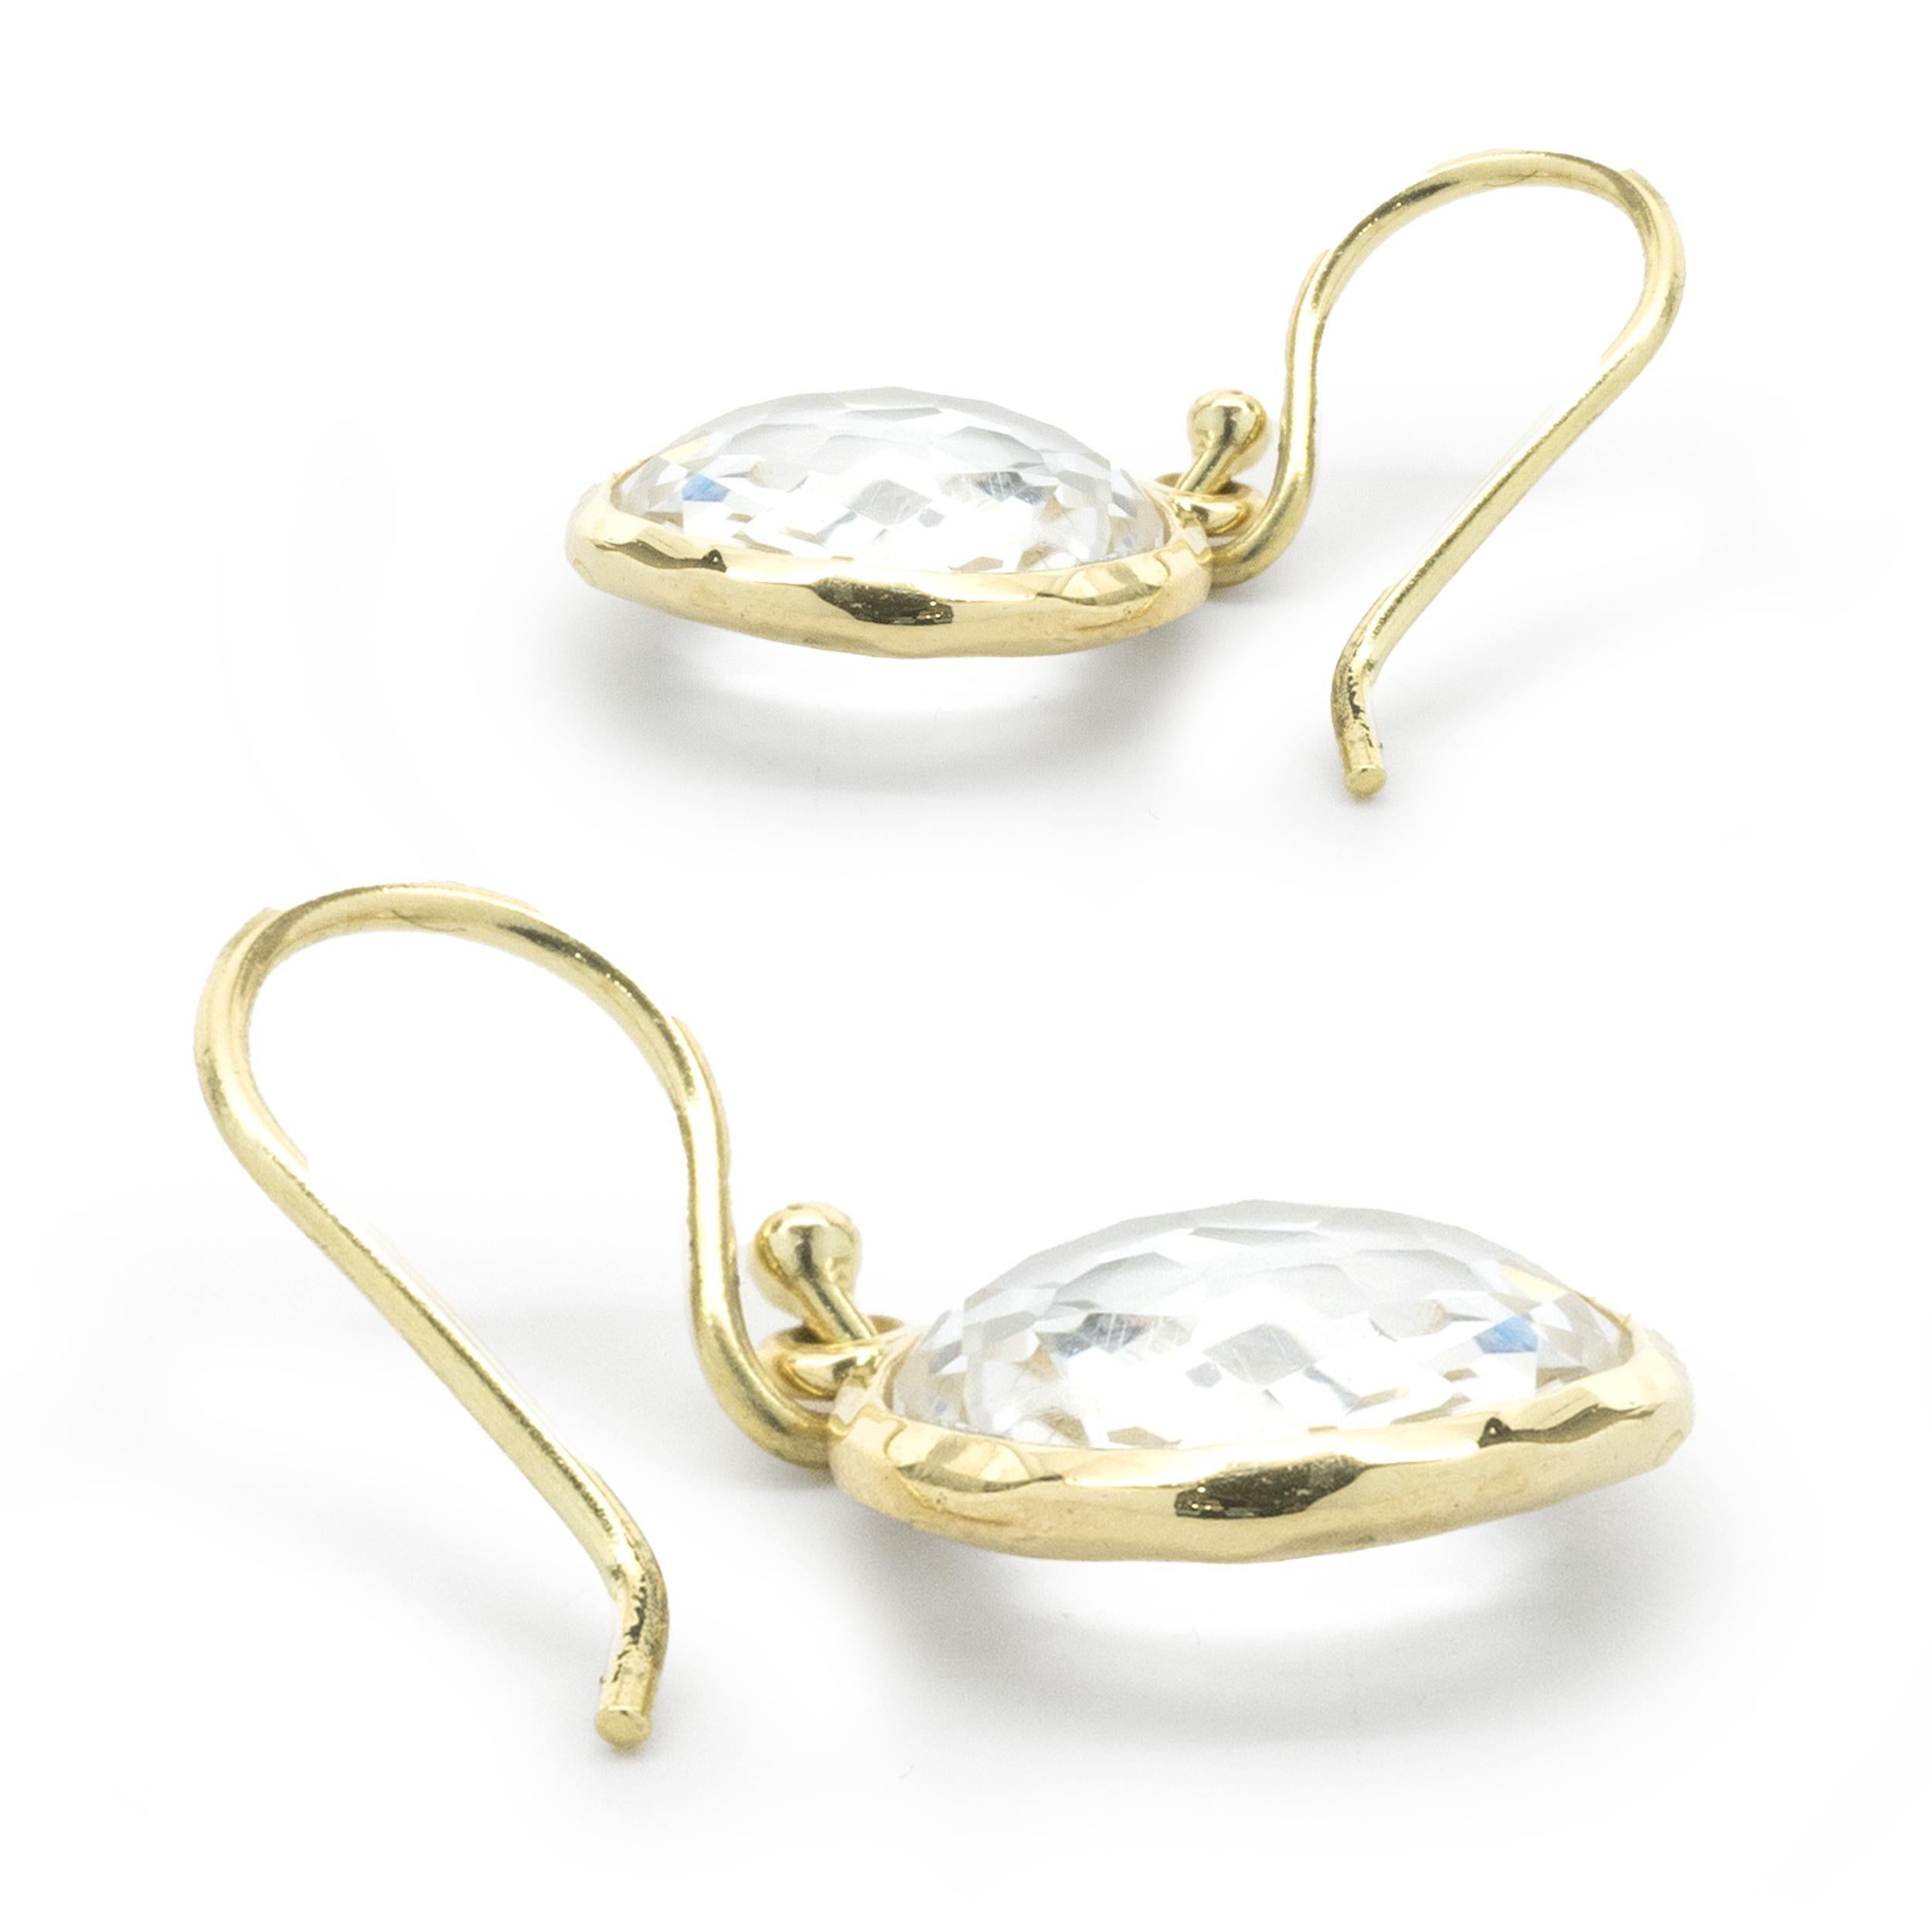 ippolita earrings on sale